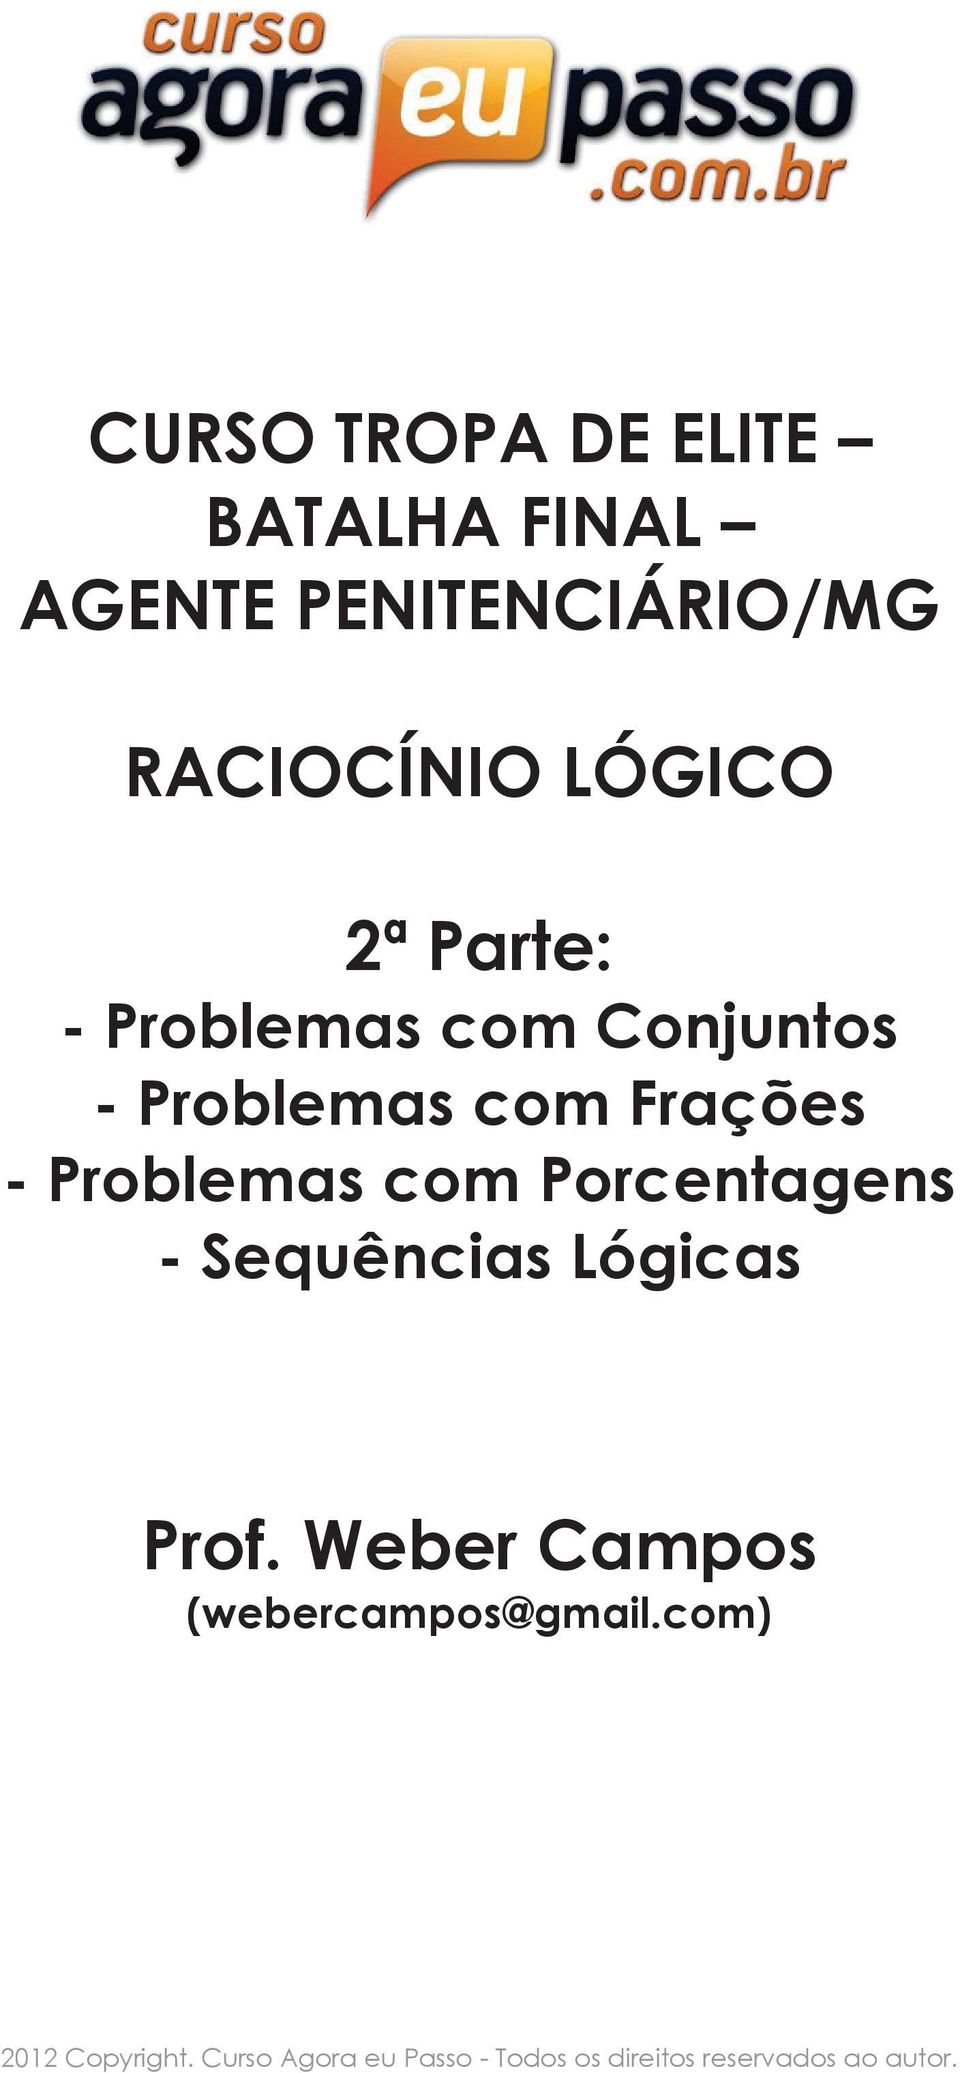 Problemas com Porcentagens - Sequências Lógicas (webercampos@gmail.